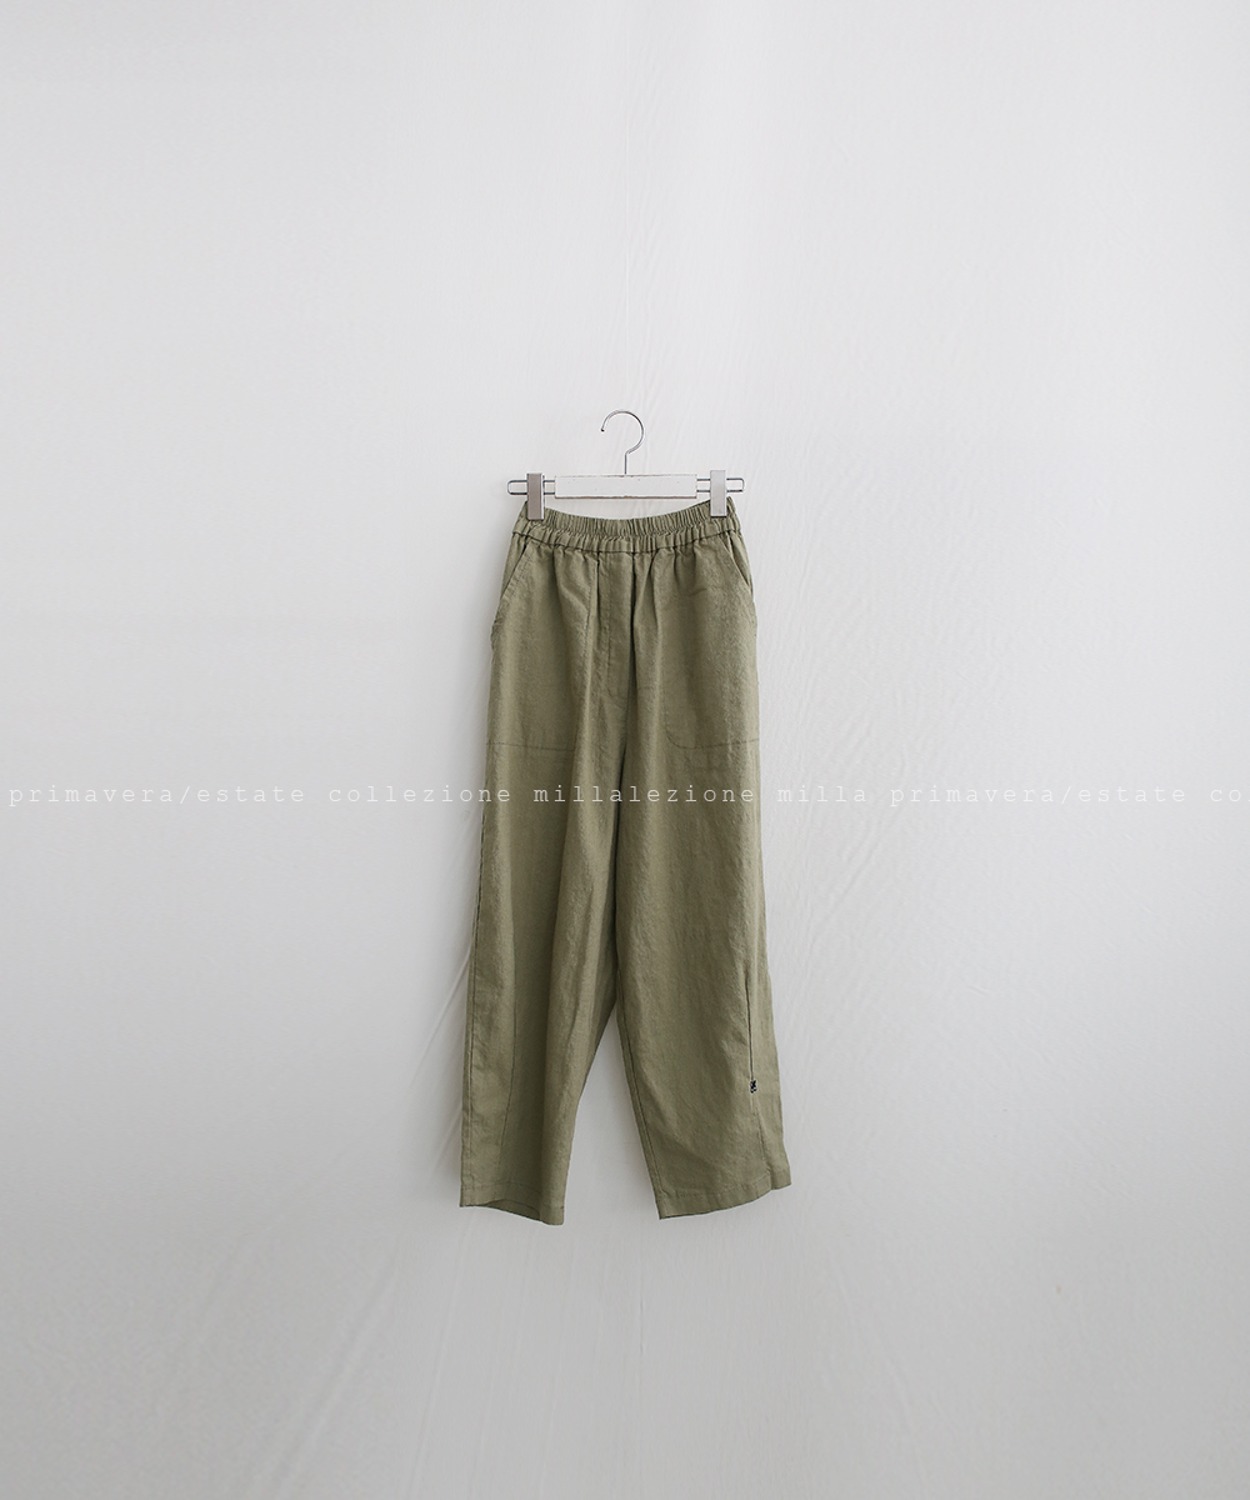 N°004 pants